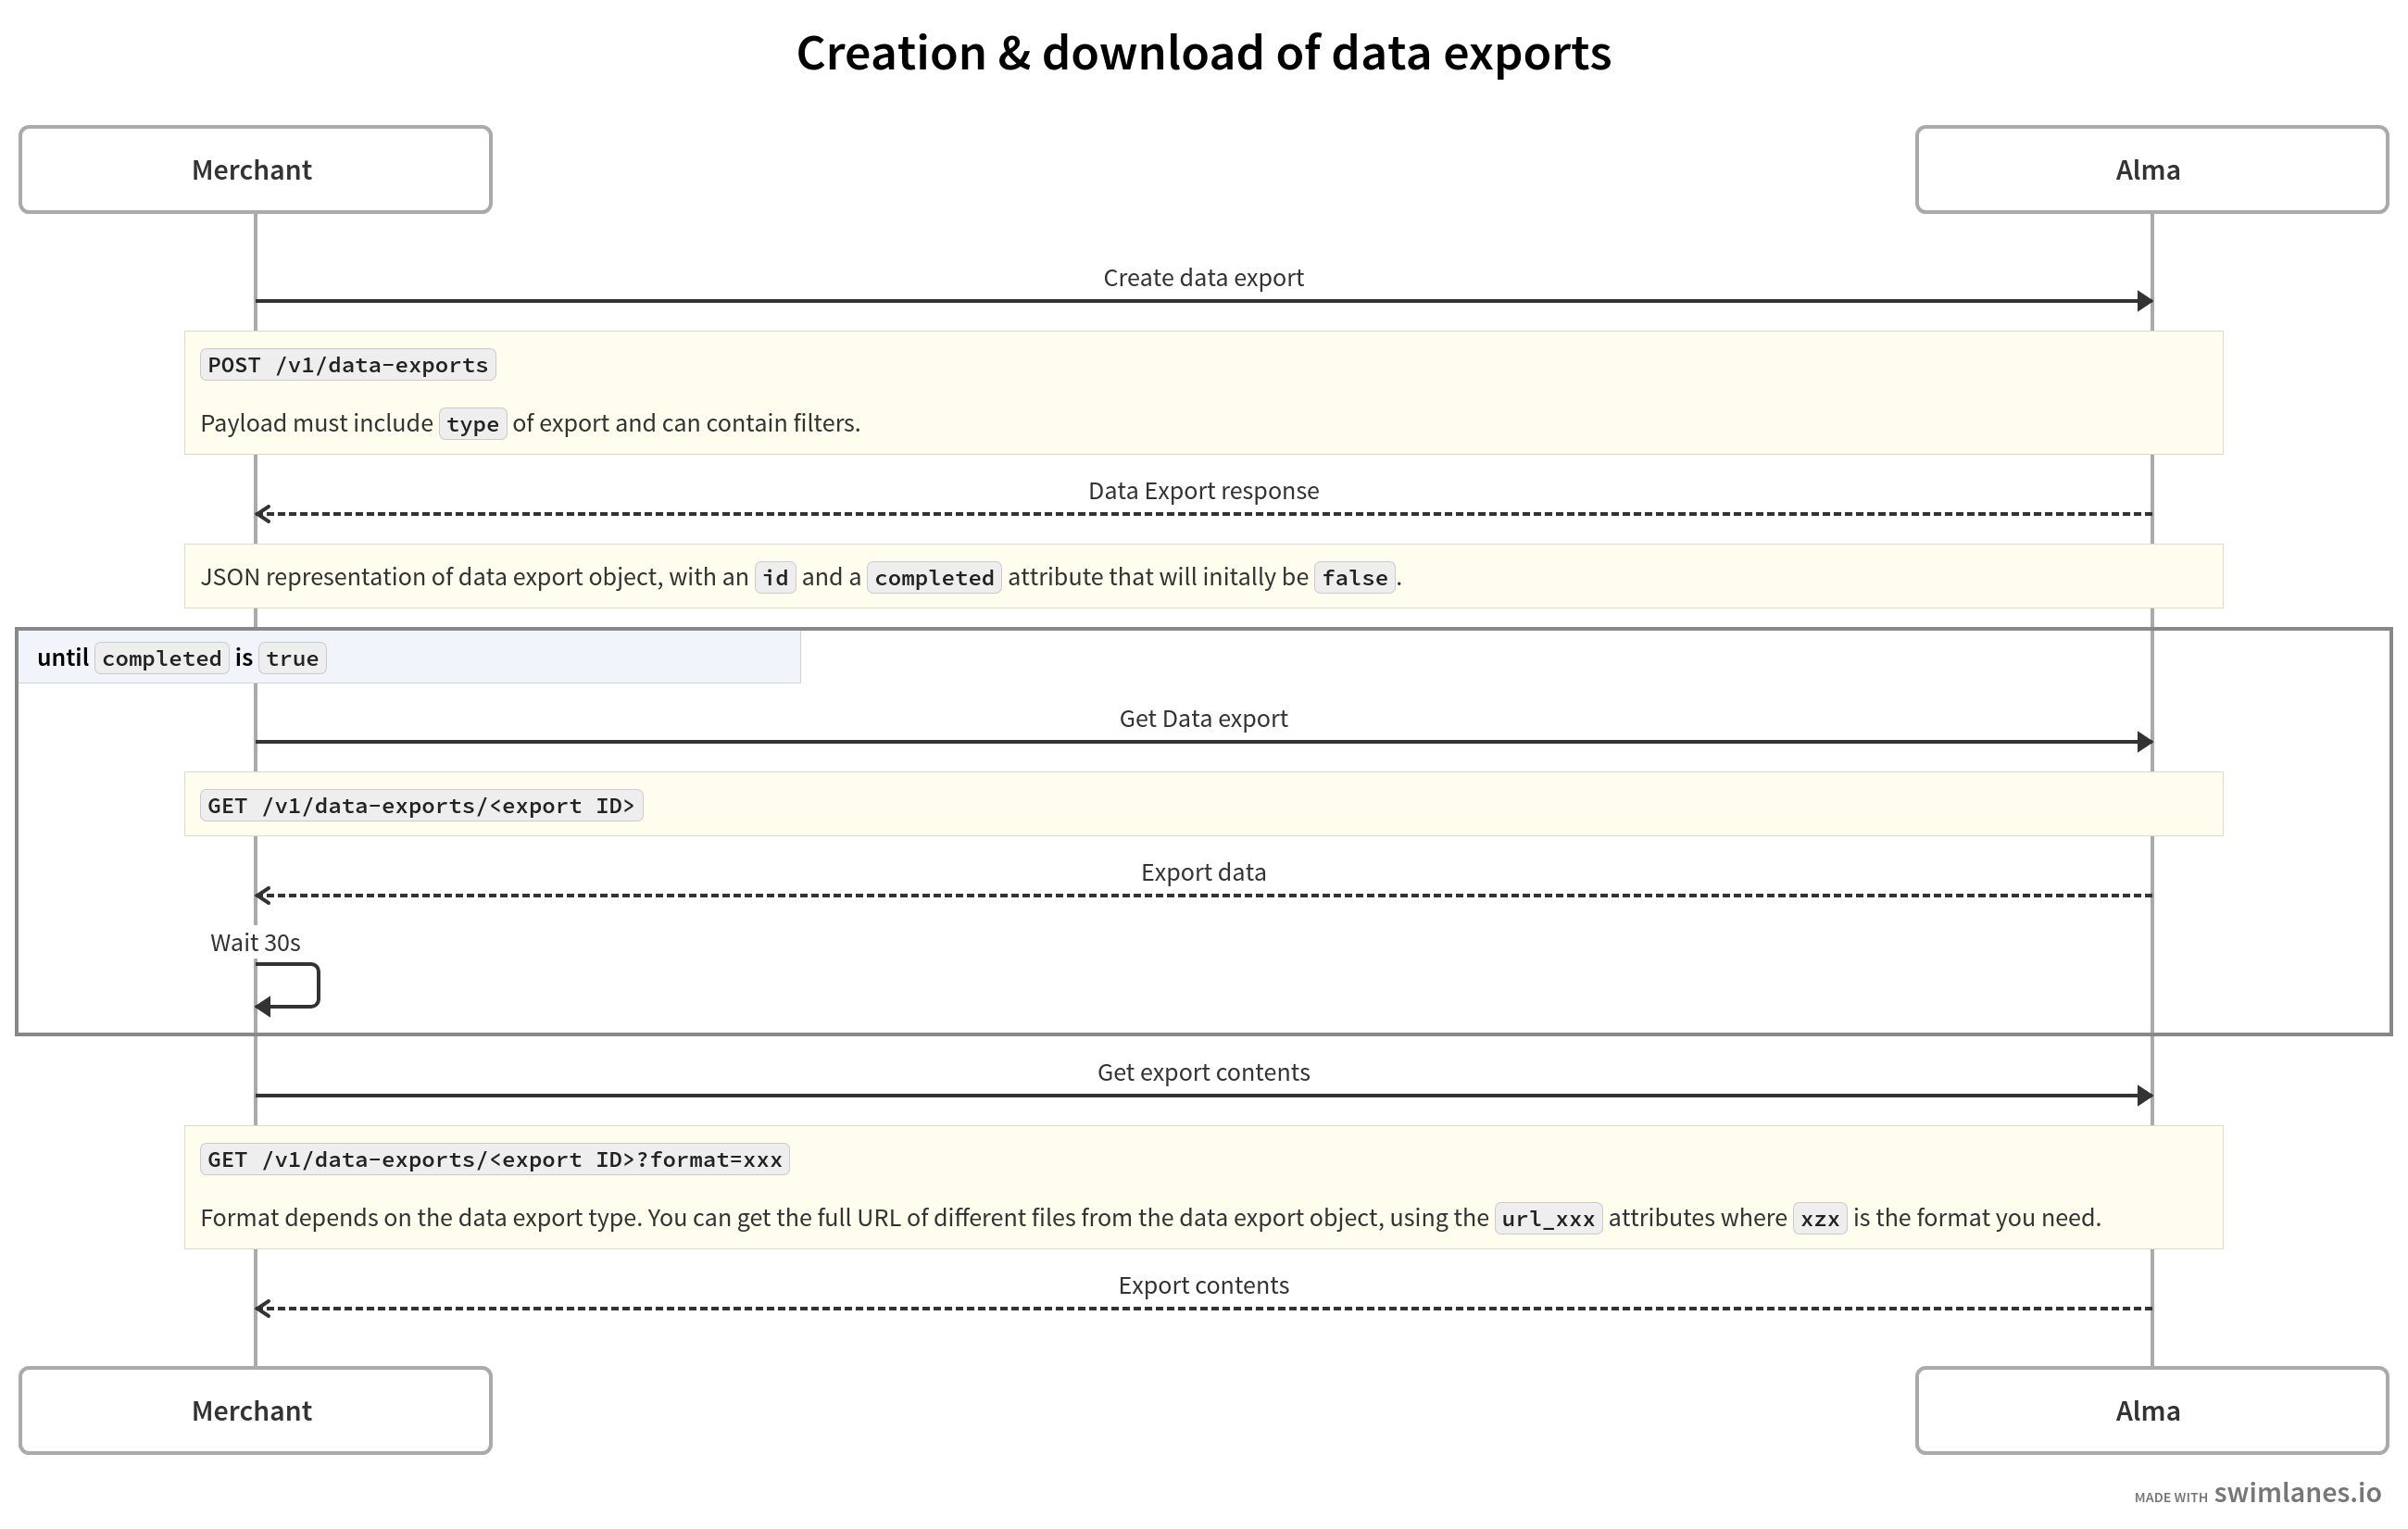 Diagramme de séquence détaillant le process de génération et téléchargement d'un export de données